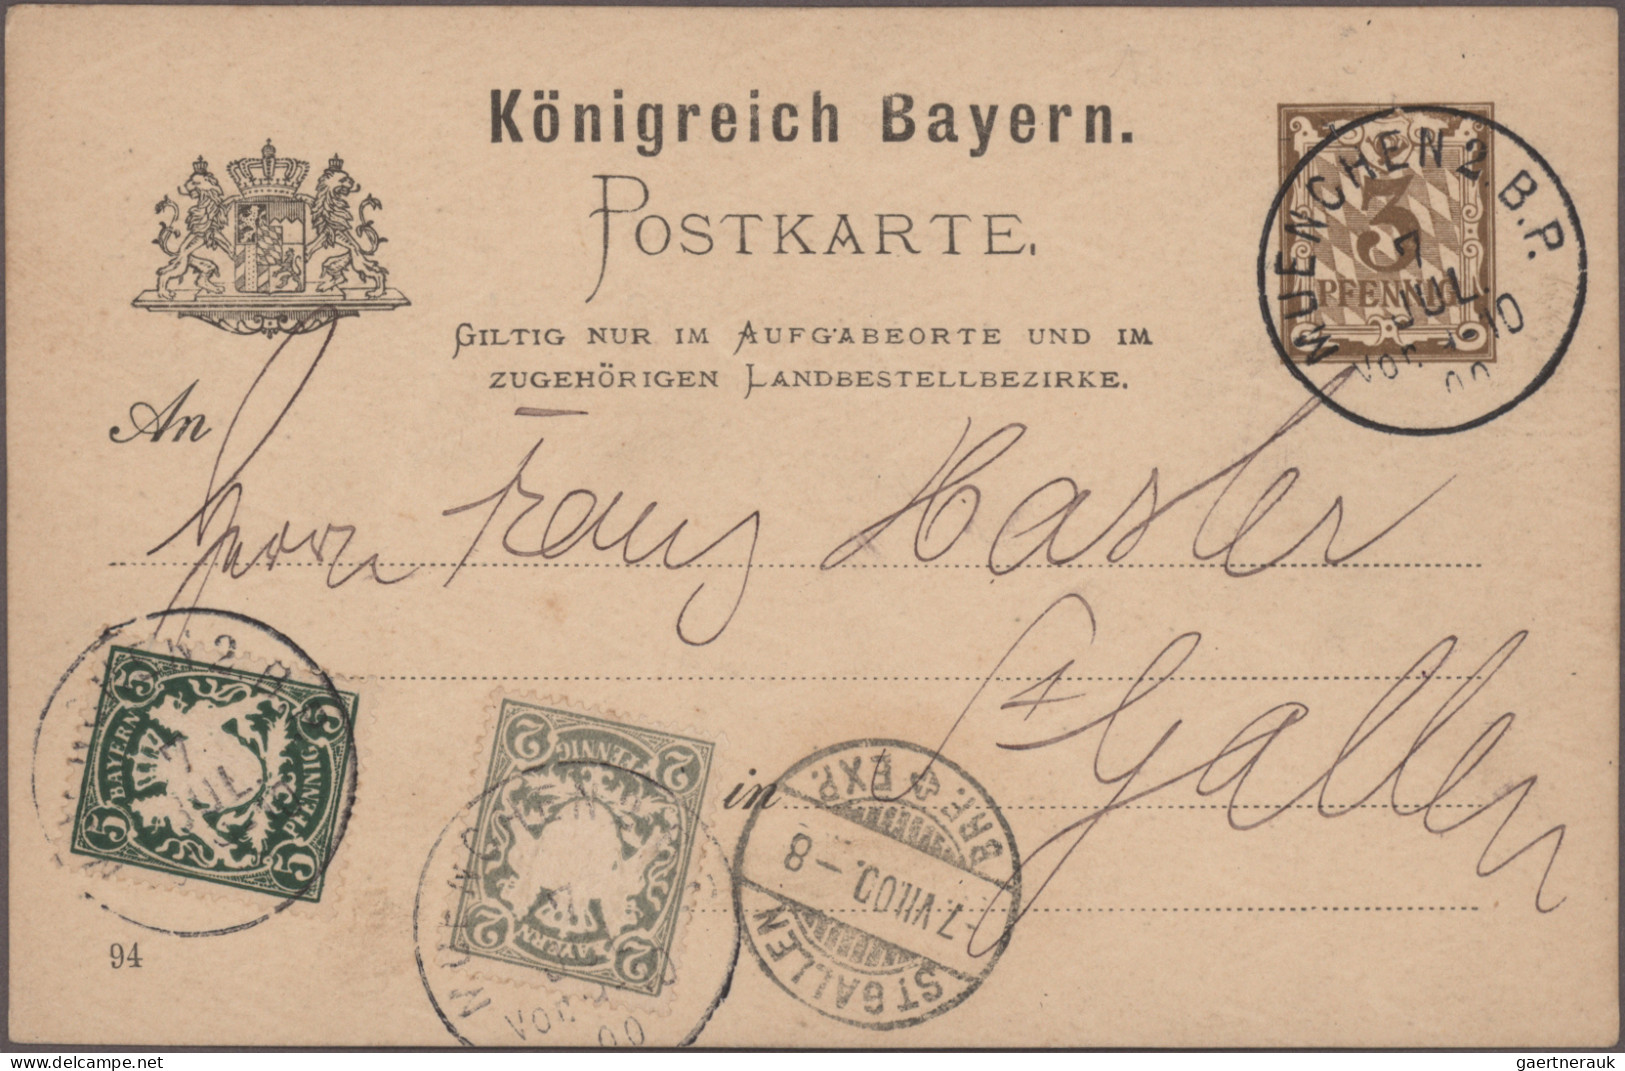 Bayern - Ganzsachen: 1873/1920, Partie von ca. 370 gebrauchten und ungebrauchten